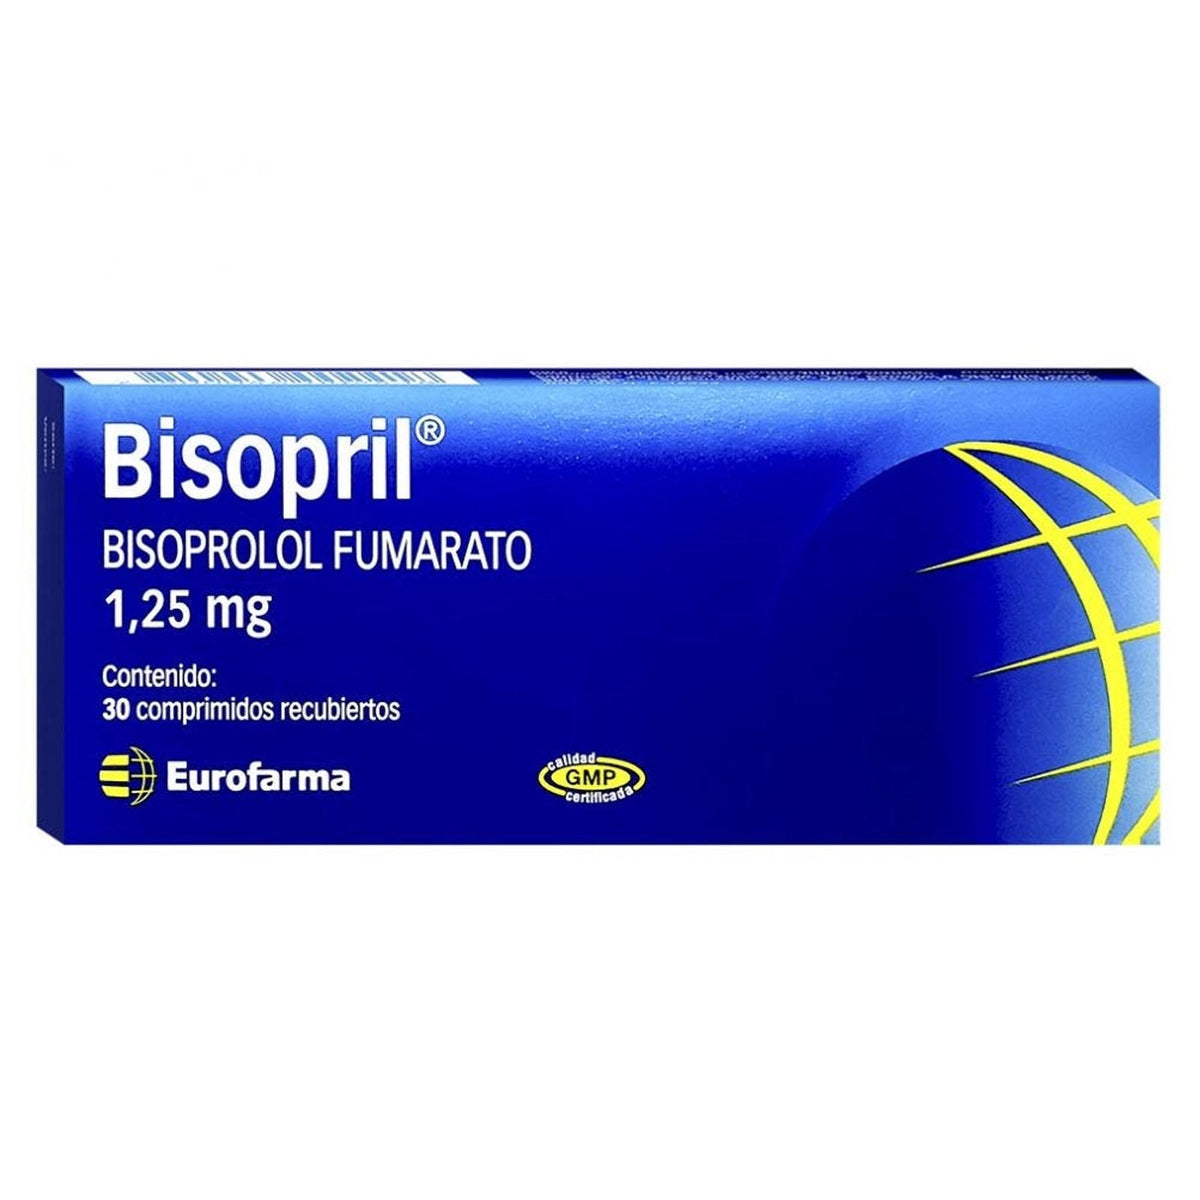 Bisopril Comprimidos Recubiertos 1,25mg.